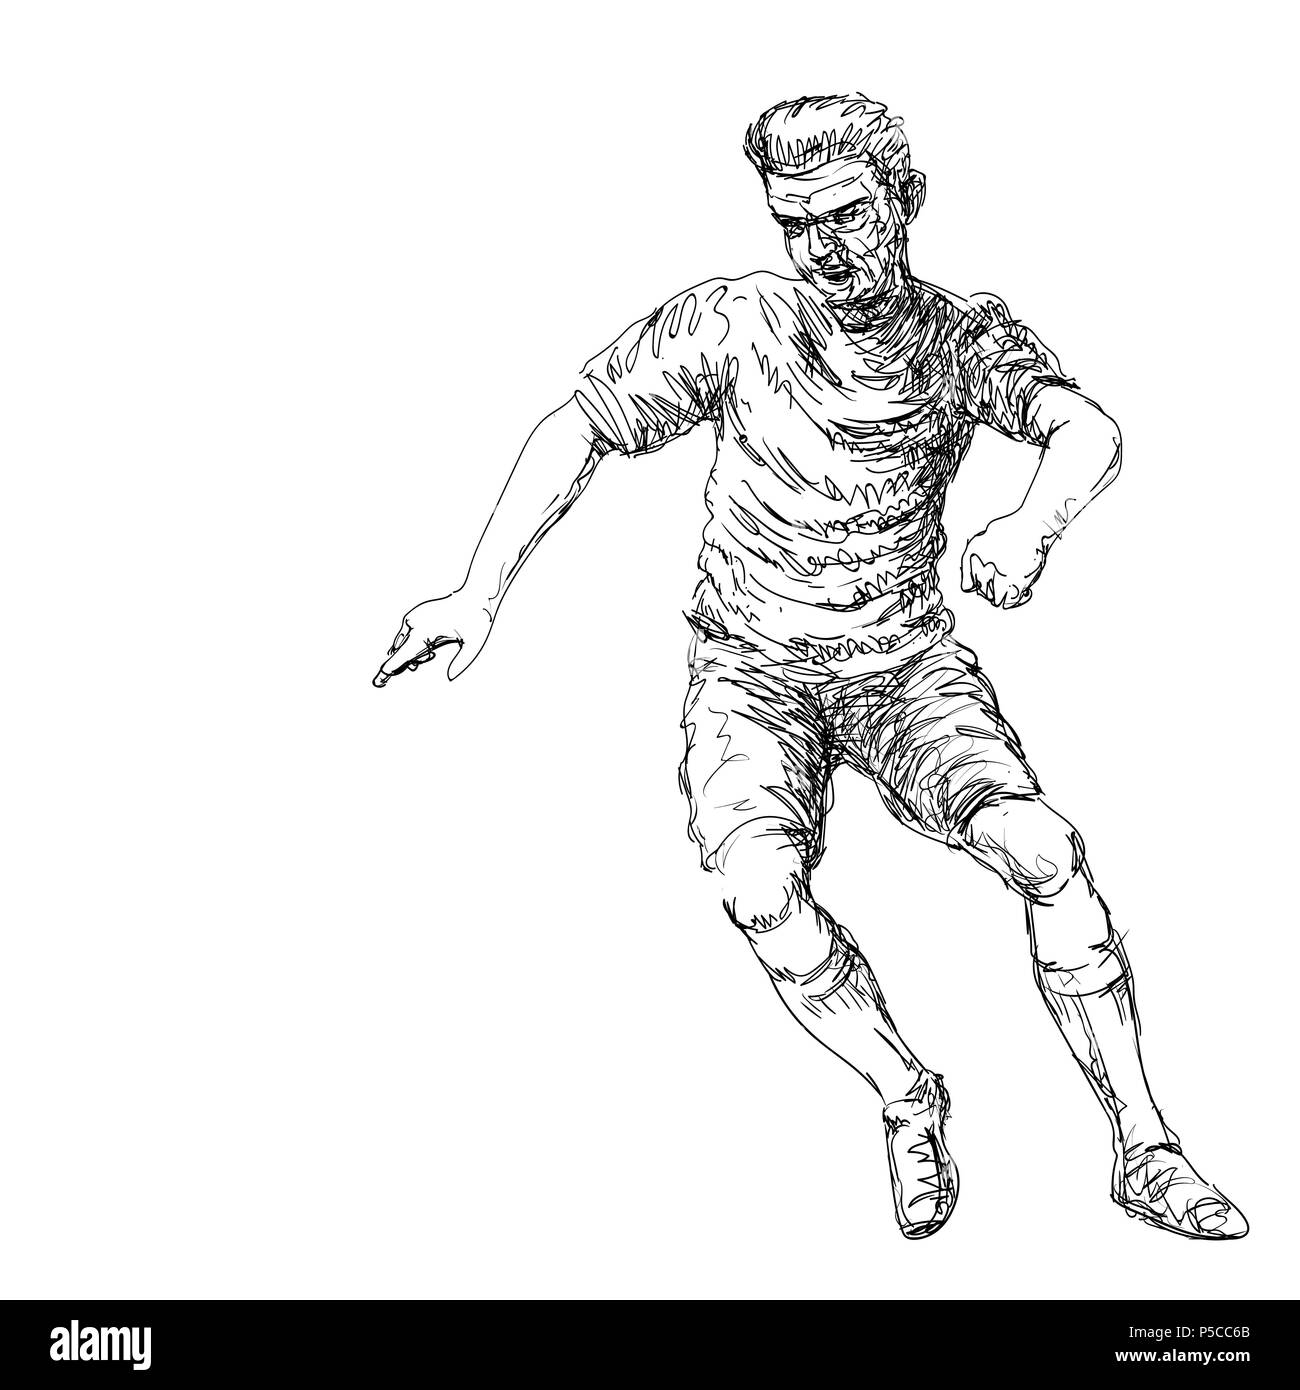 Dessin à la main du joueur de football botter un ballon - Vector Illustration dessiné à la main. Illustration de Vecteur